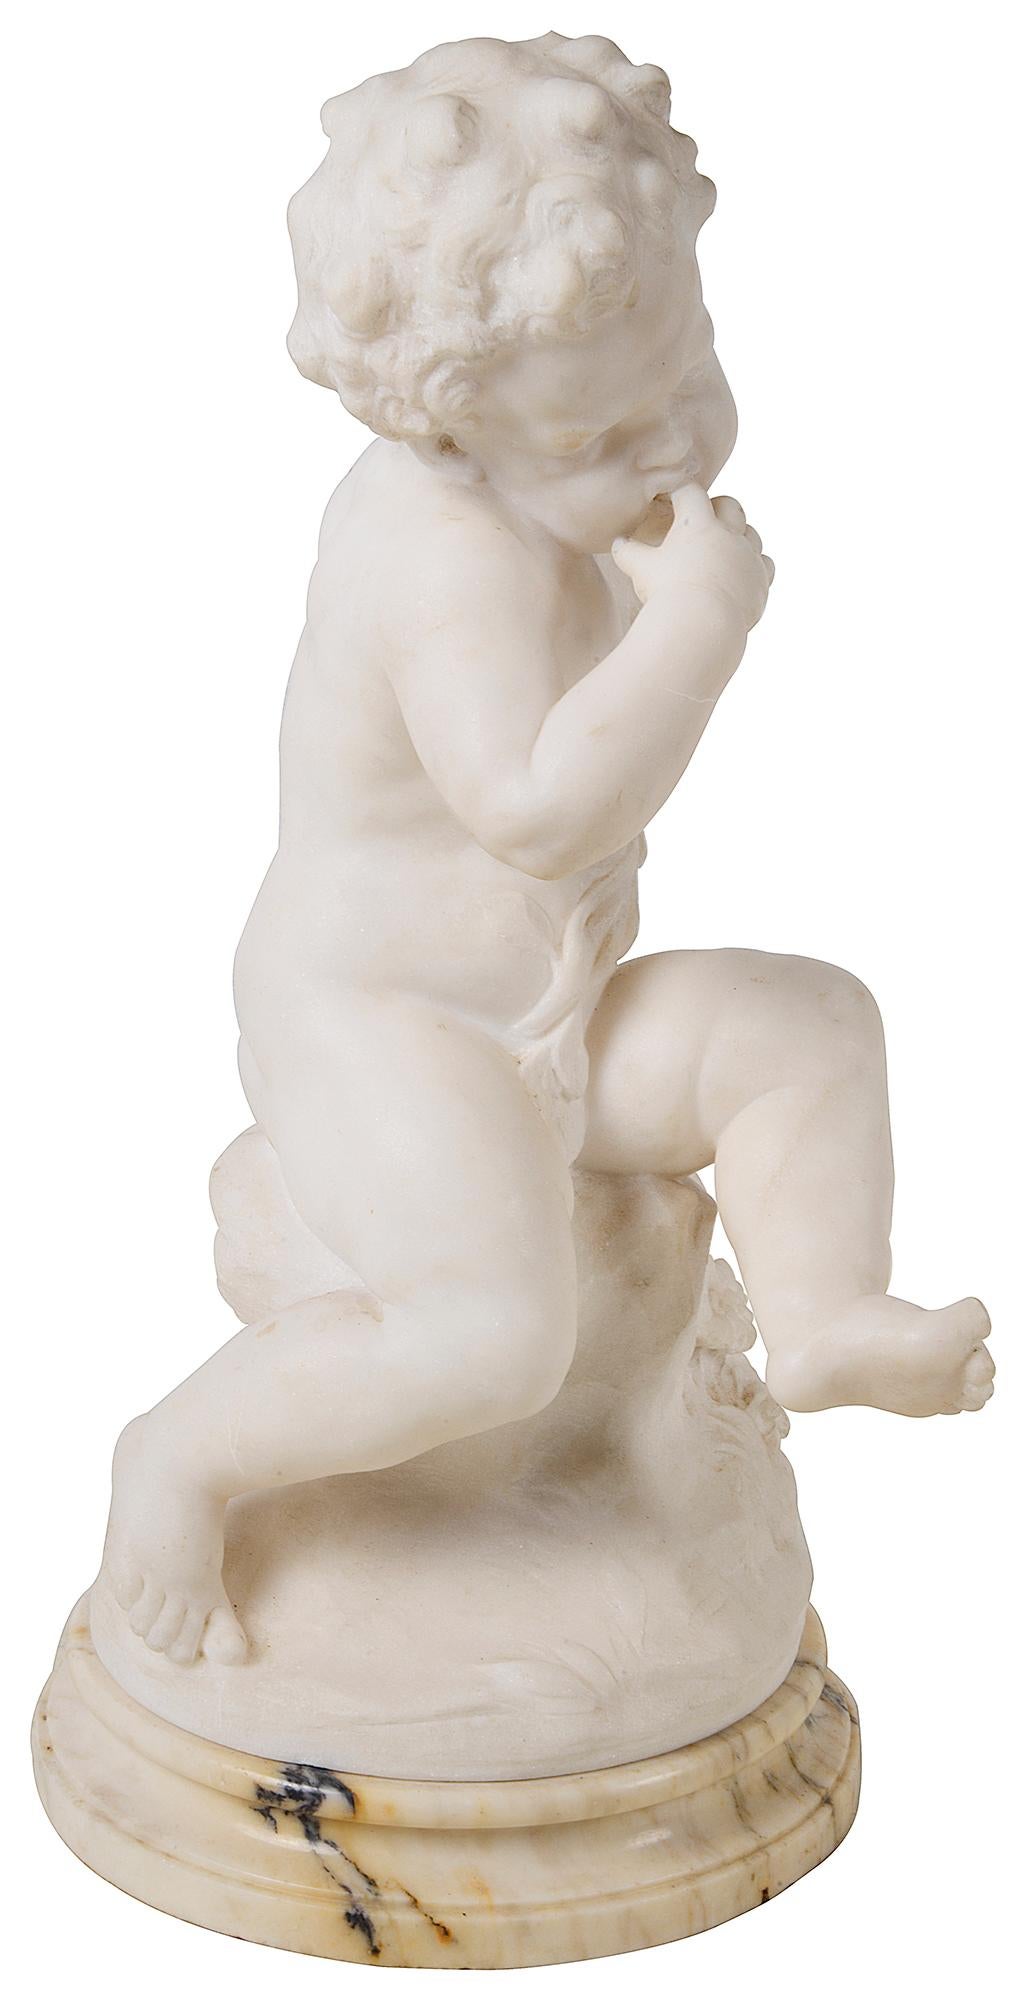 Charmante statue italienne en marbre sculpté du XIXe siècle représentant un jeune enfant assis sur un rocher et tenant un bouquet de fleurs.
Signature indescriptible.